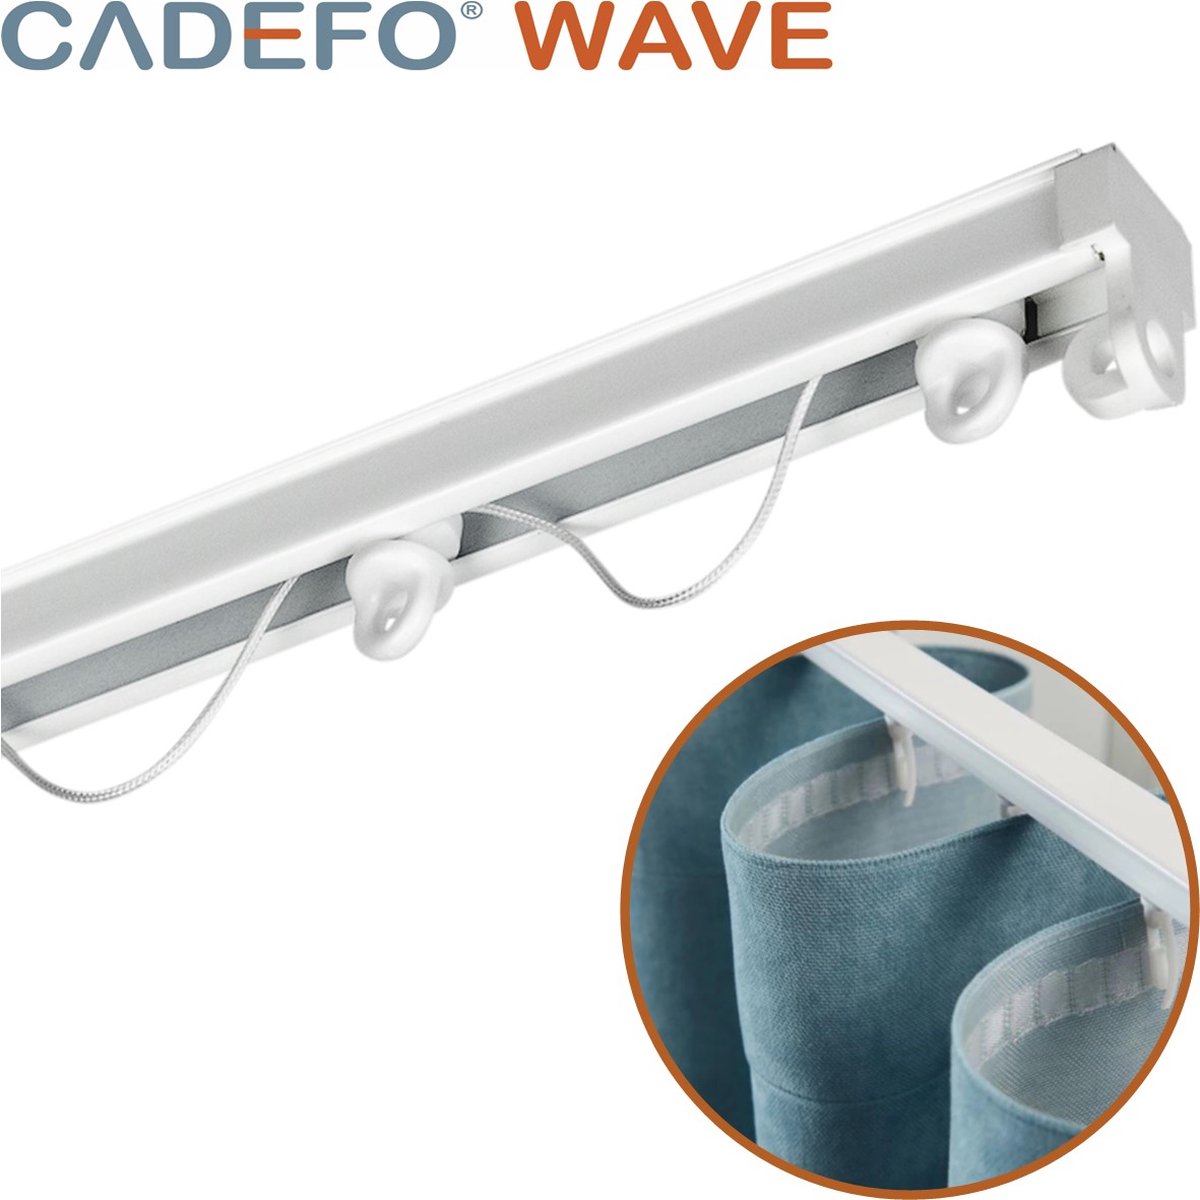 CADEFO WAVE (151 - 200 cm) Gordijnrails - Compleet op maat! - UIT 1 STUK - Leverbaar tot 6 meter - Plafondbevestiging - Lengte 158 cm